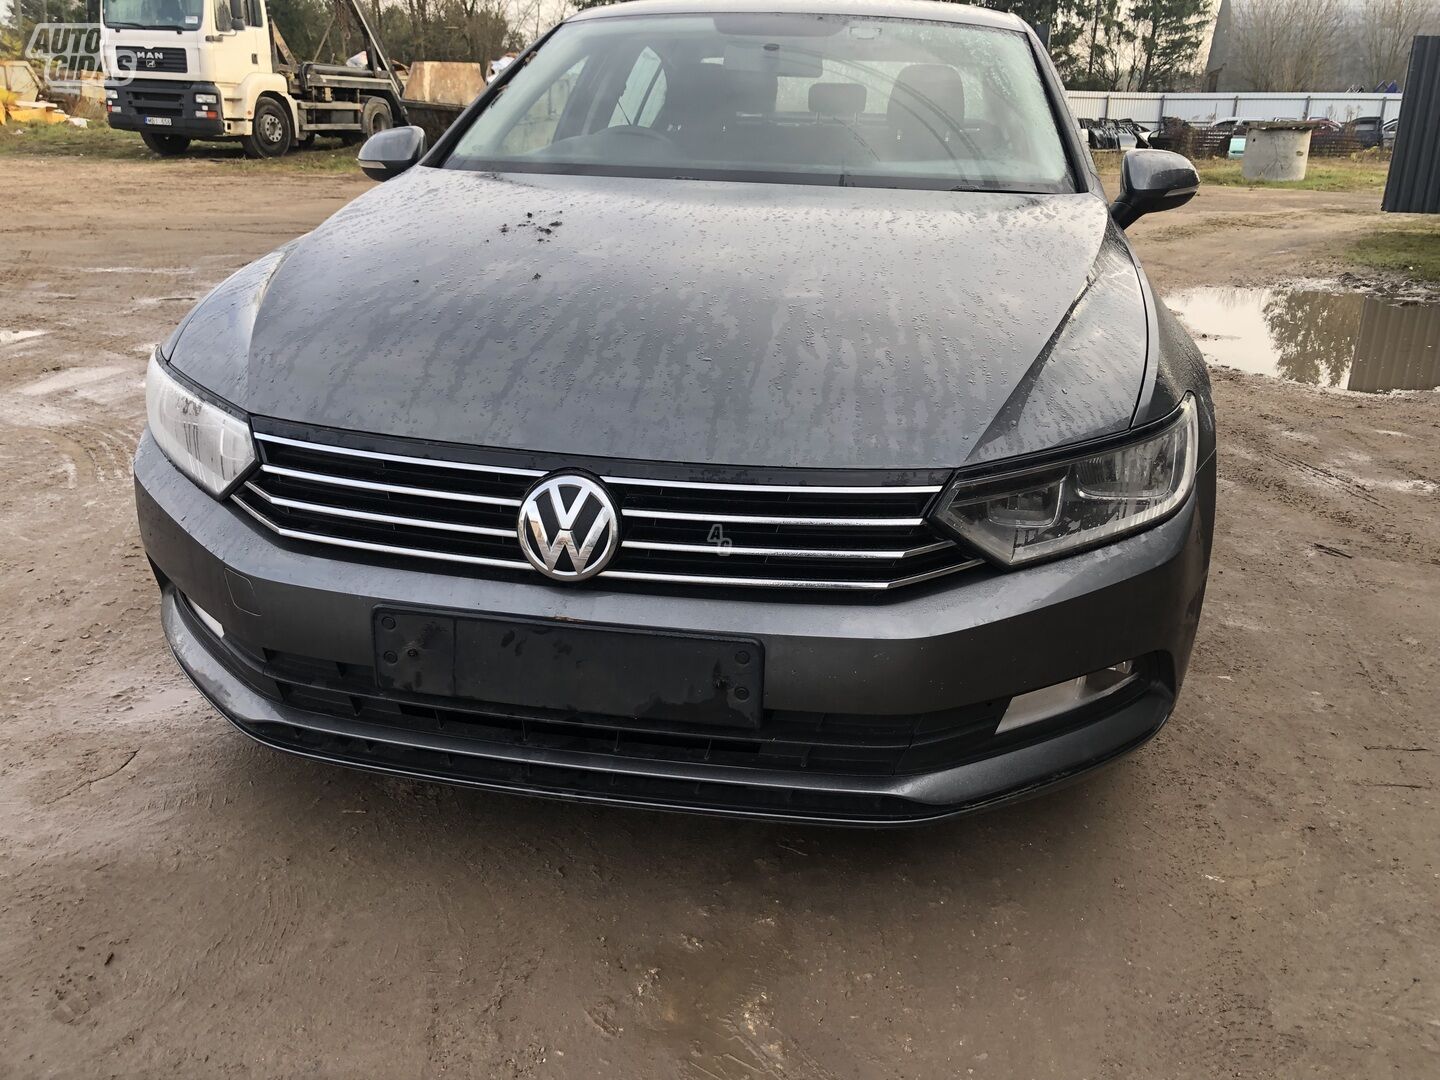 Volkswagen Passat 2016 г запчясти